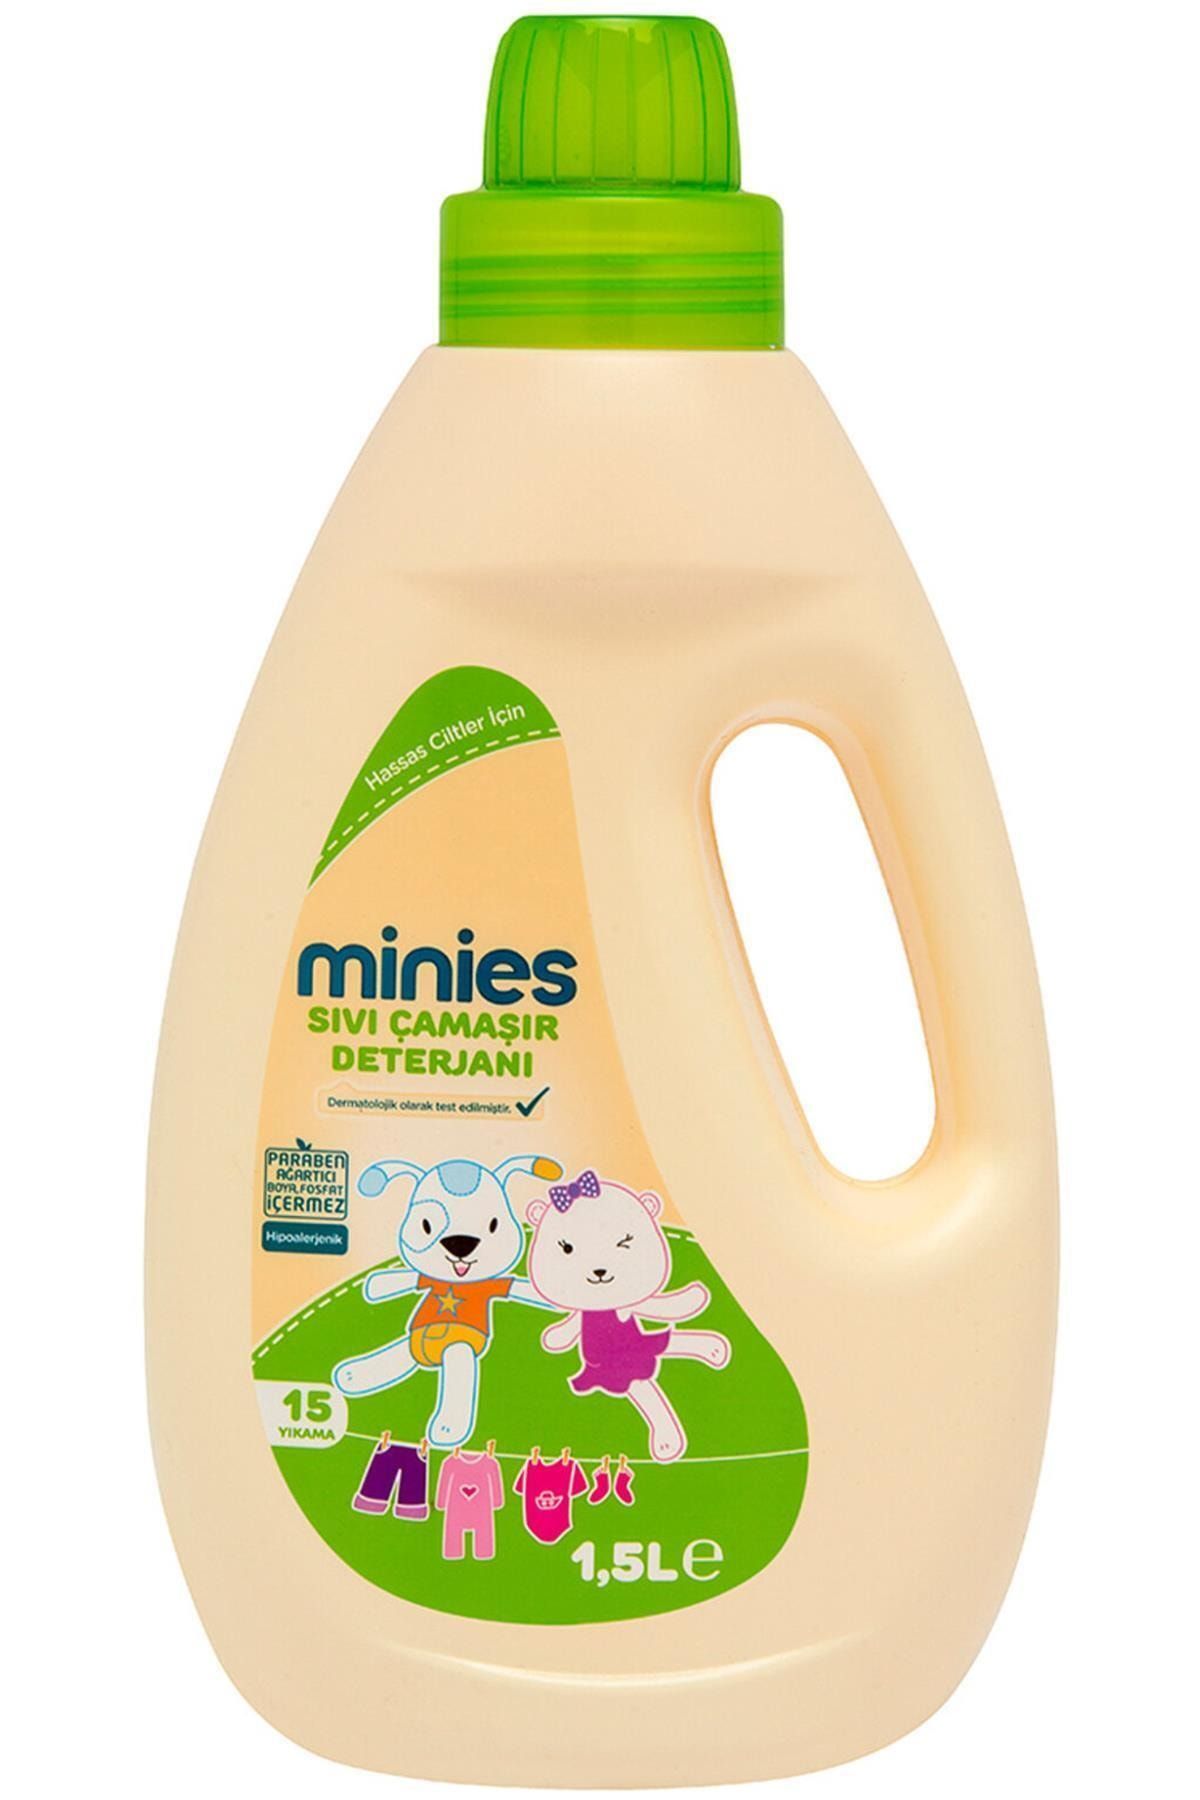 Minies Sıvı Çamaşır Deterjanı 1,5lt